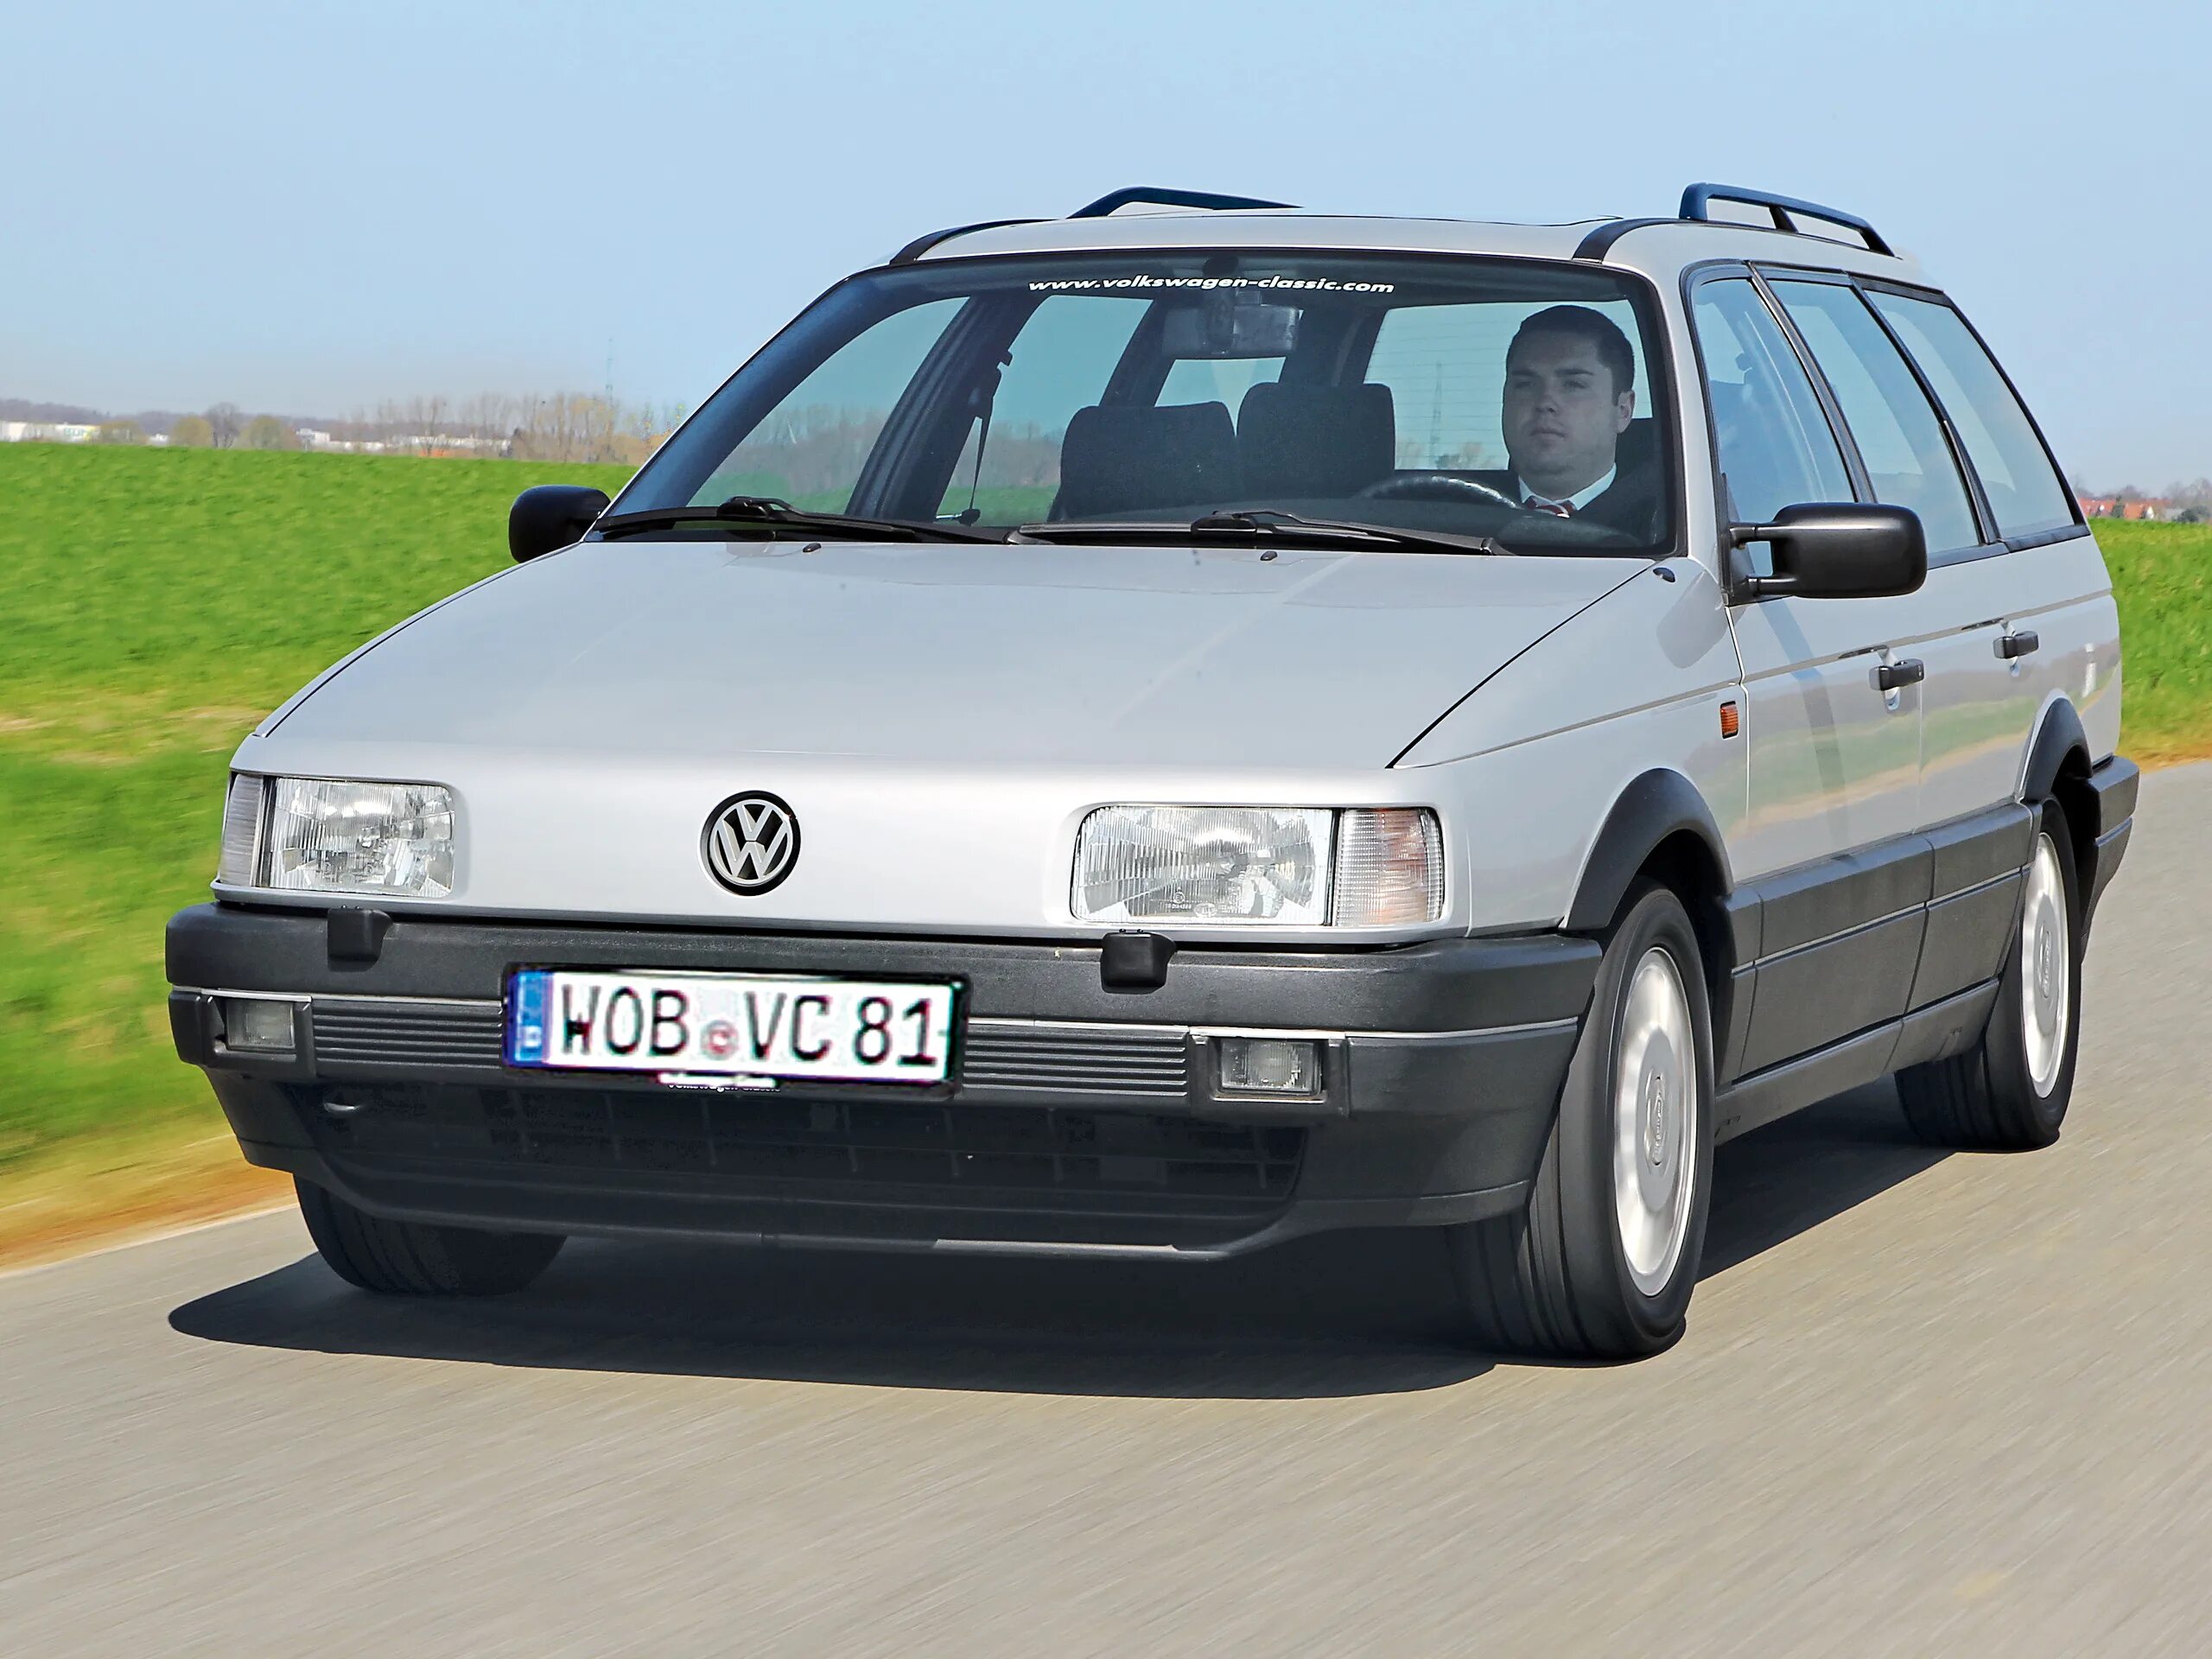 Volkswagen Passat b3 универсал. Volkswagen Passat b4 variant. Volkswagen Passat b3 variant. VW Passat b3 variant Syncro. Купить фольксваген пассат в крае